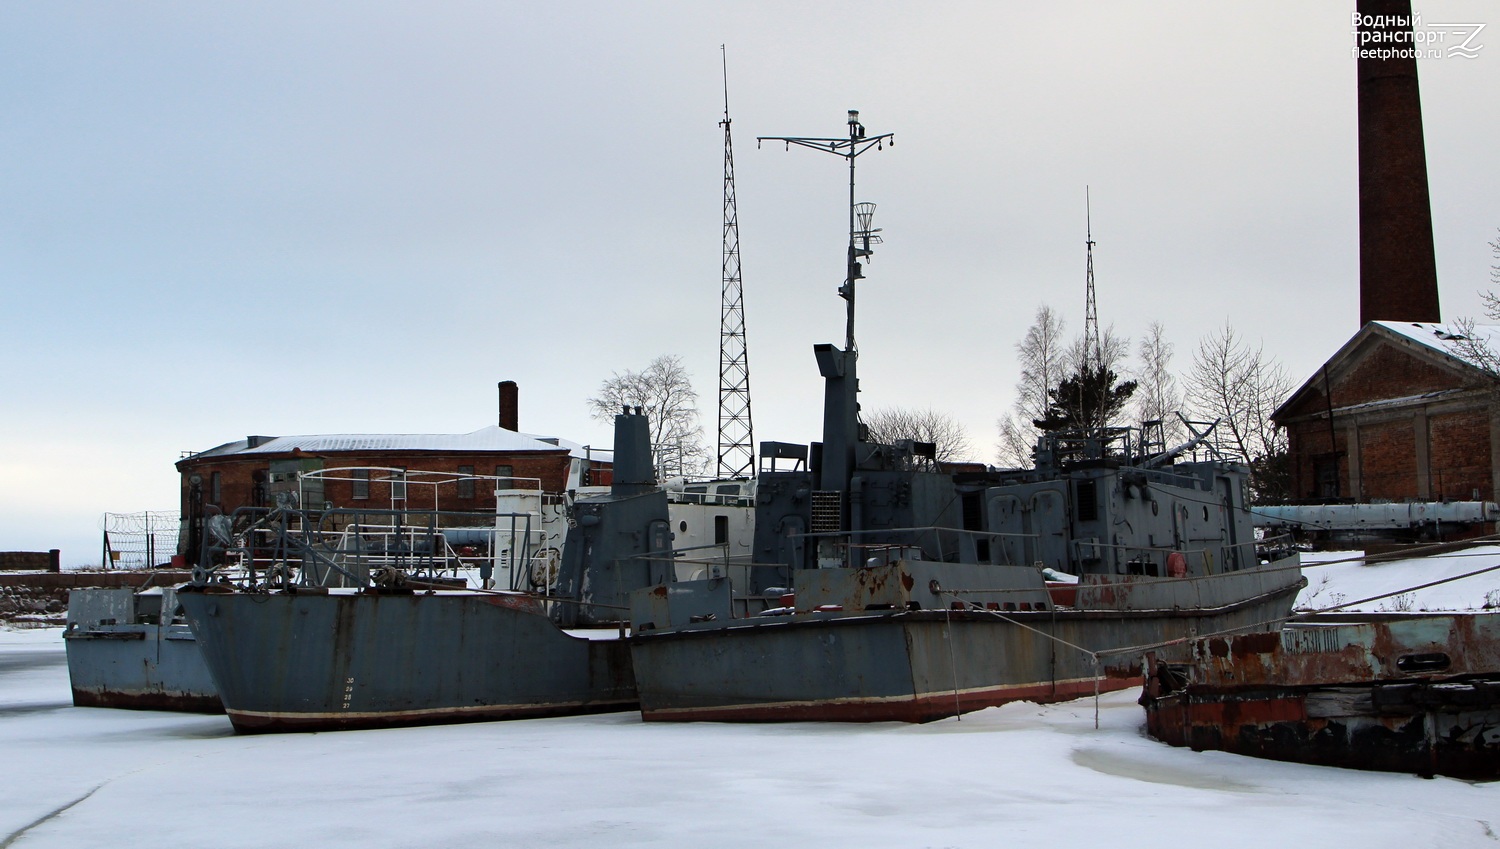 Неопознанное судно - тип Фламинго. Russian Navy